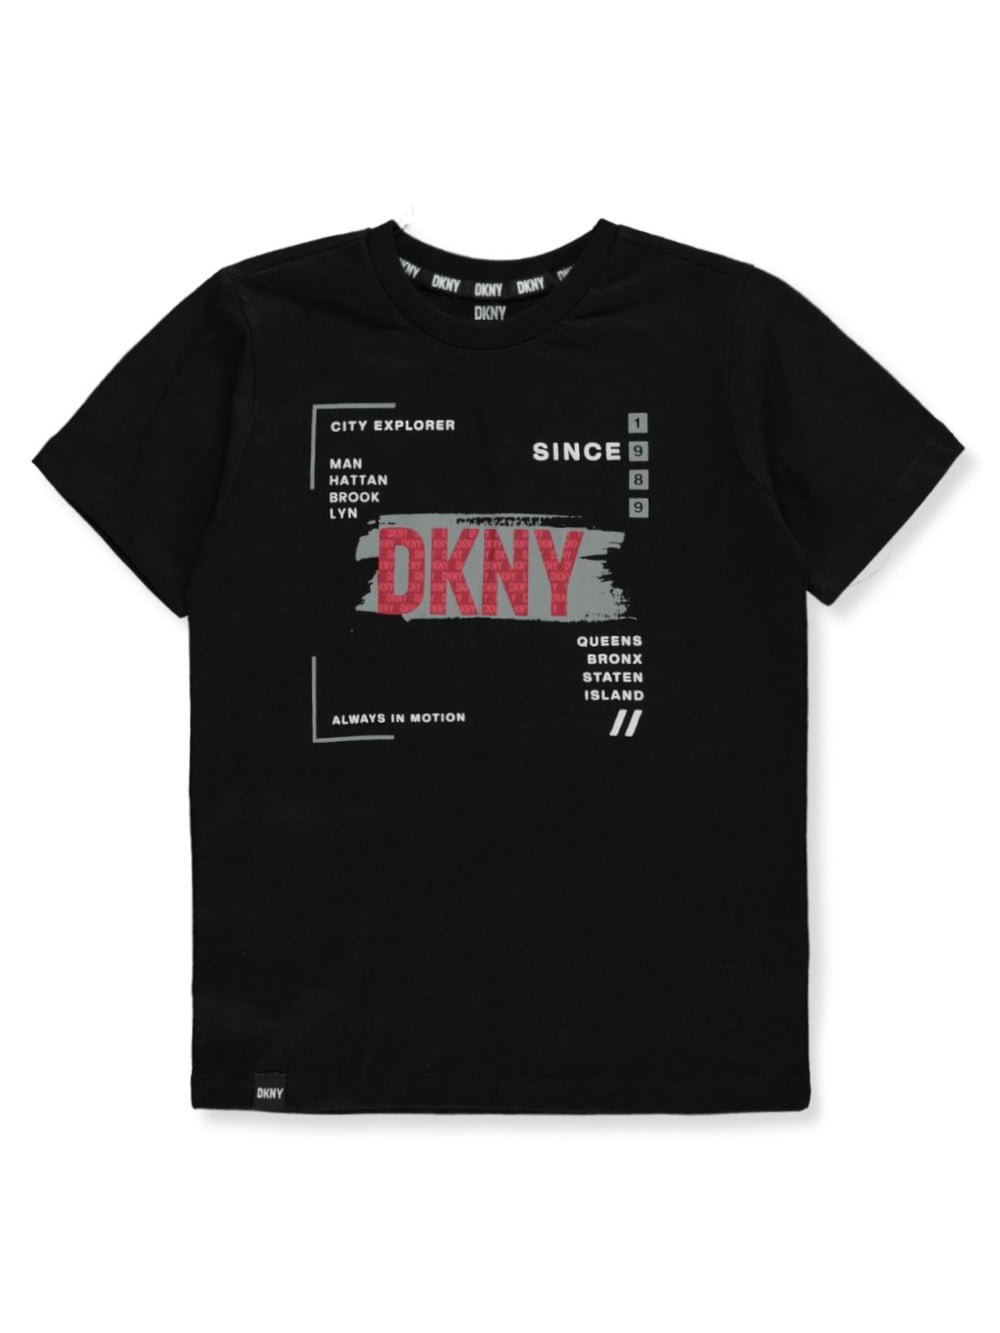 DKNY Mens T-Shirt Black Logo White